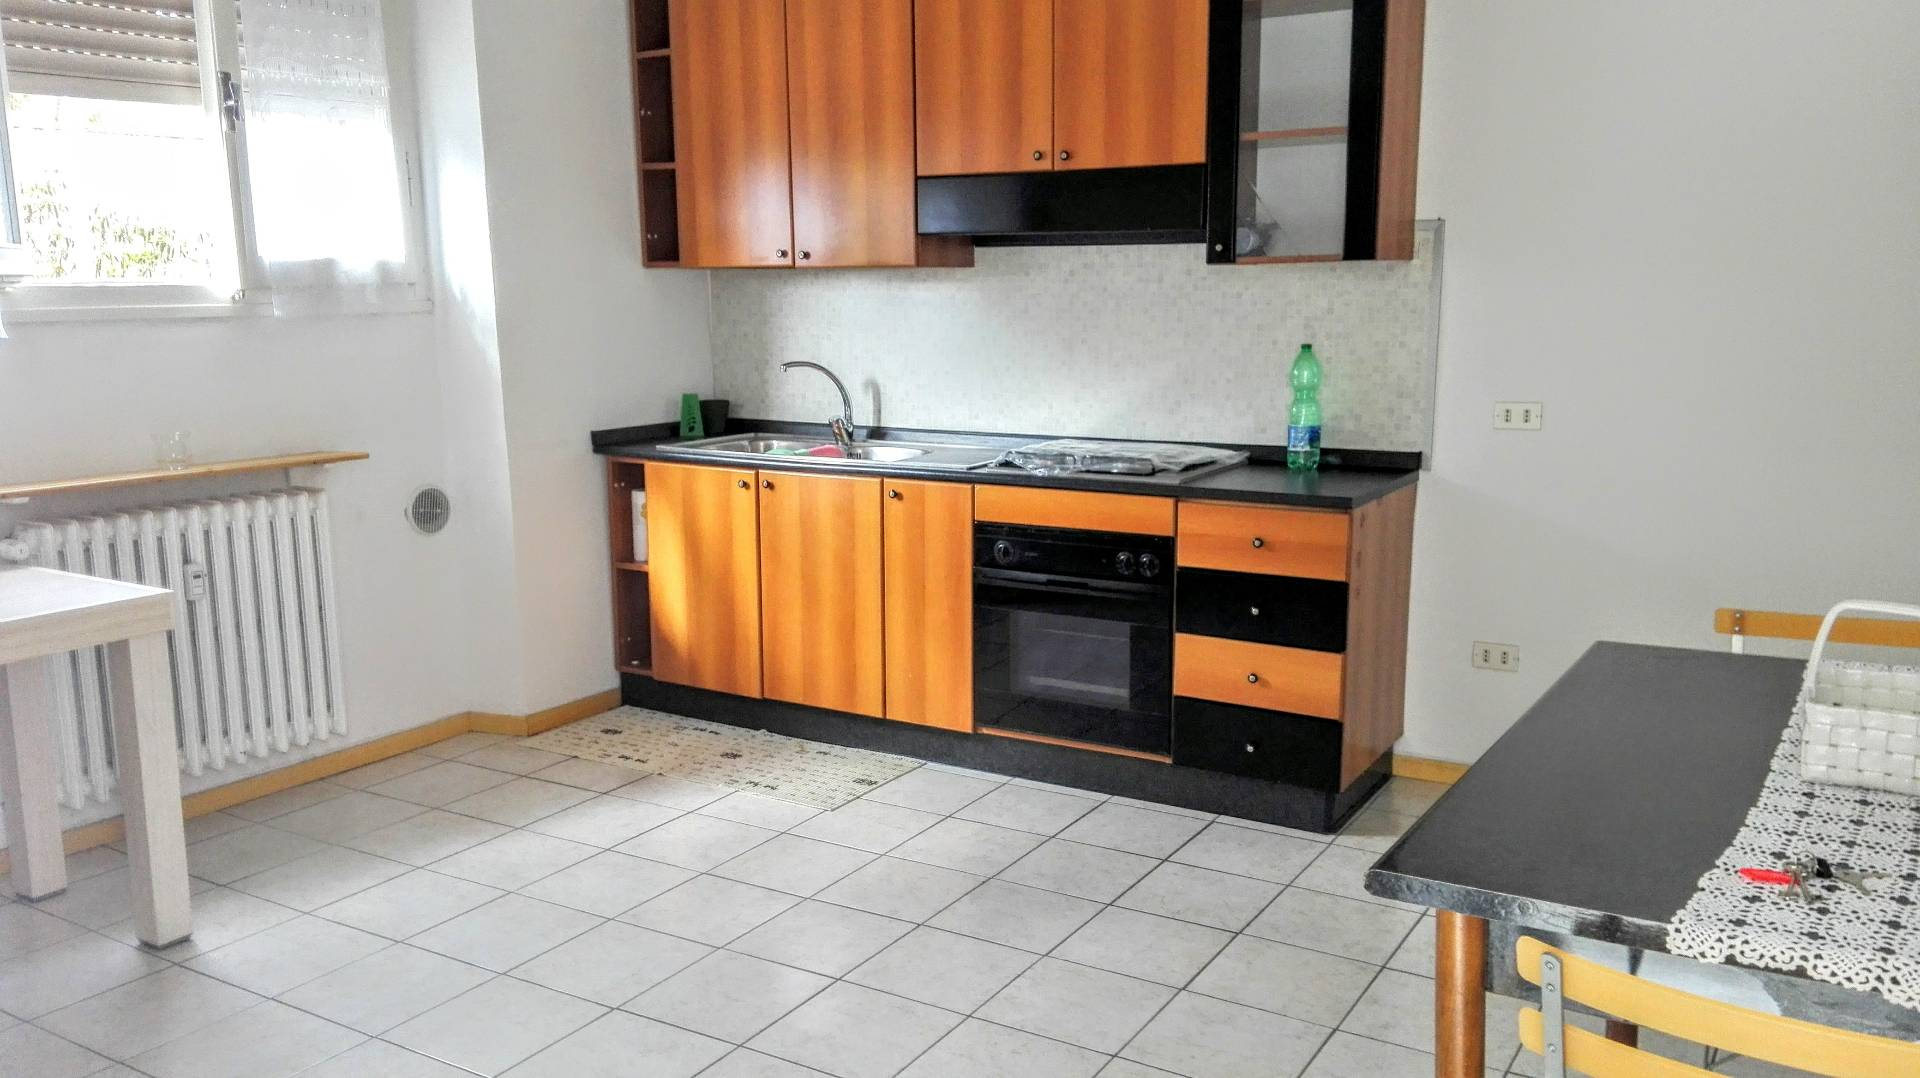 Appartamento in vendita a Casale Monferrato, 2 locali, prezzo € 25.000 | PortaleAgenzieImmobiliari.it